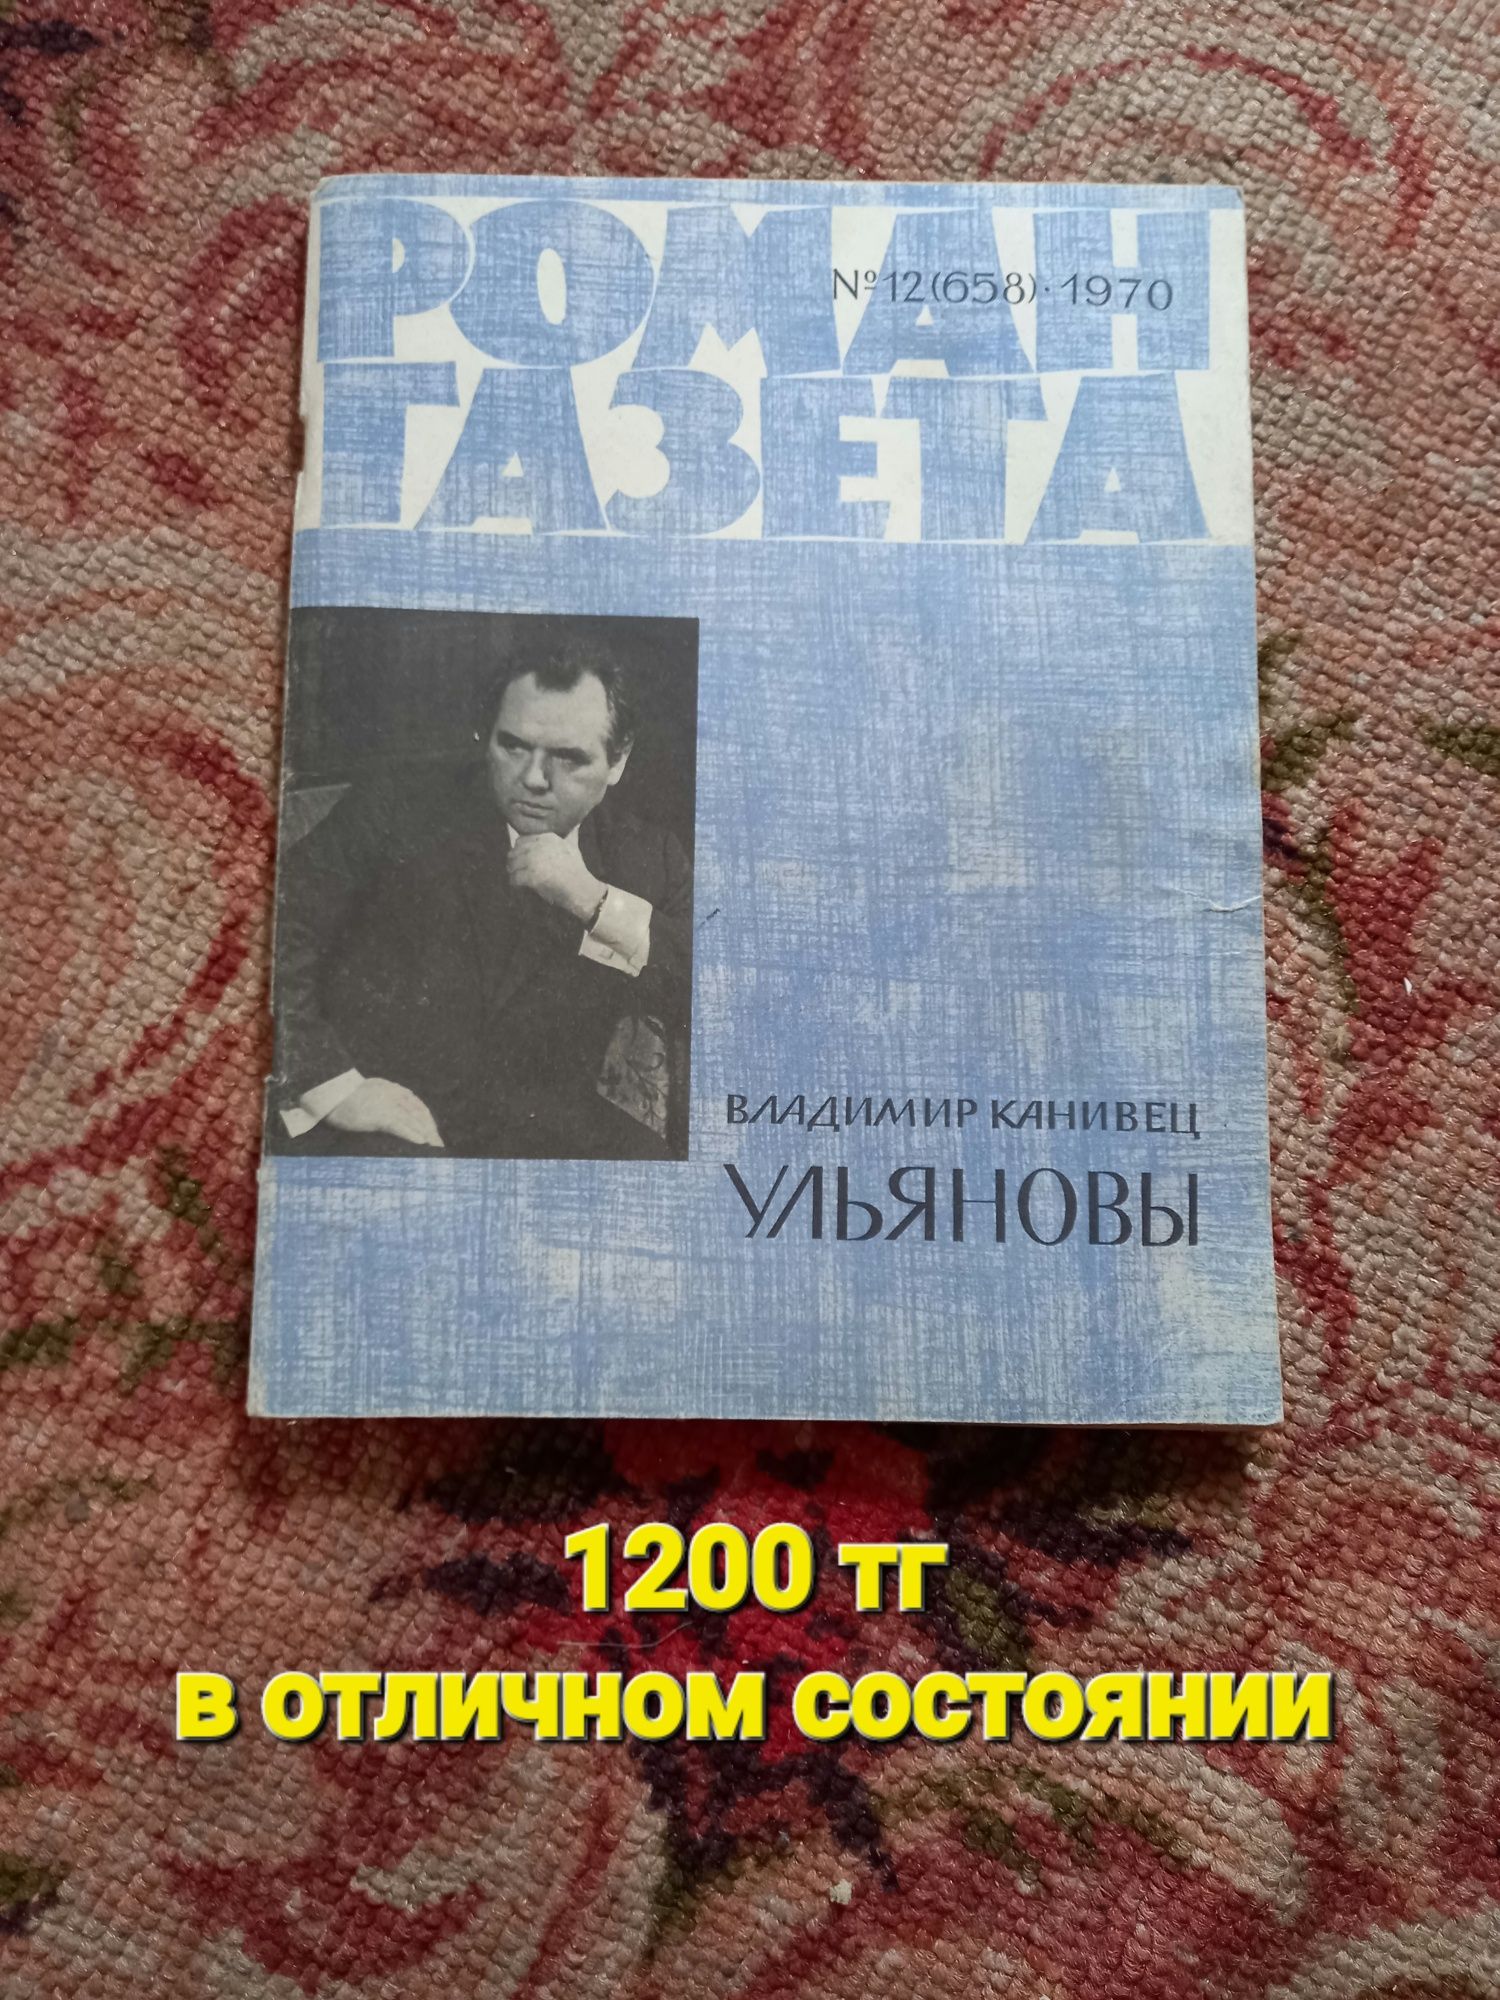 Продам журналы СССР в одном экземпляре